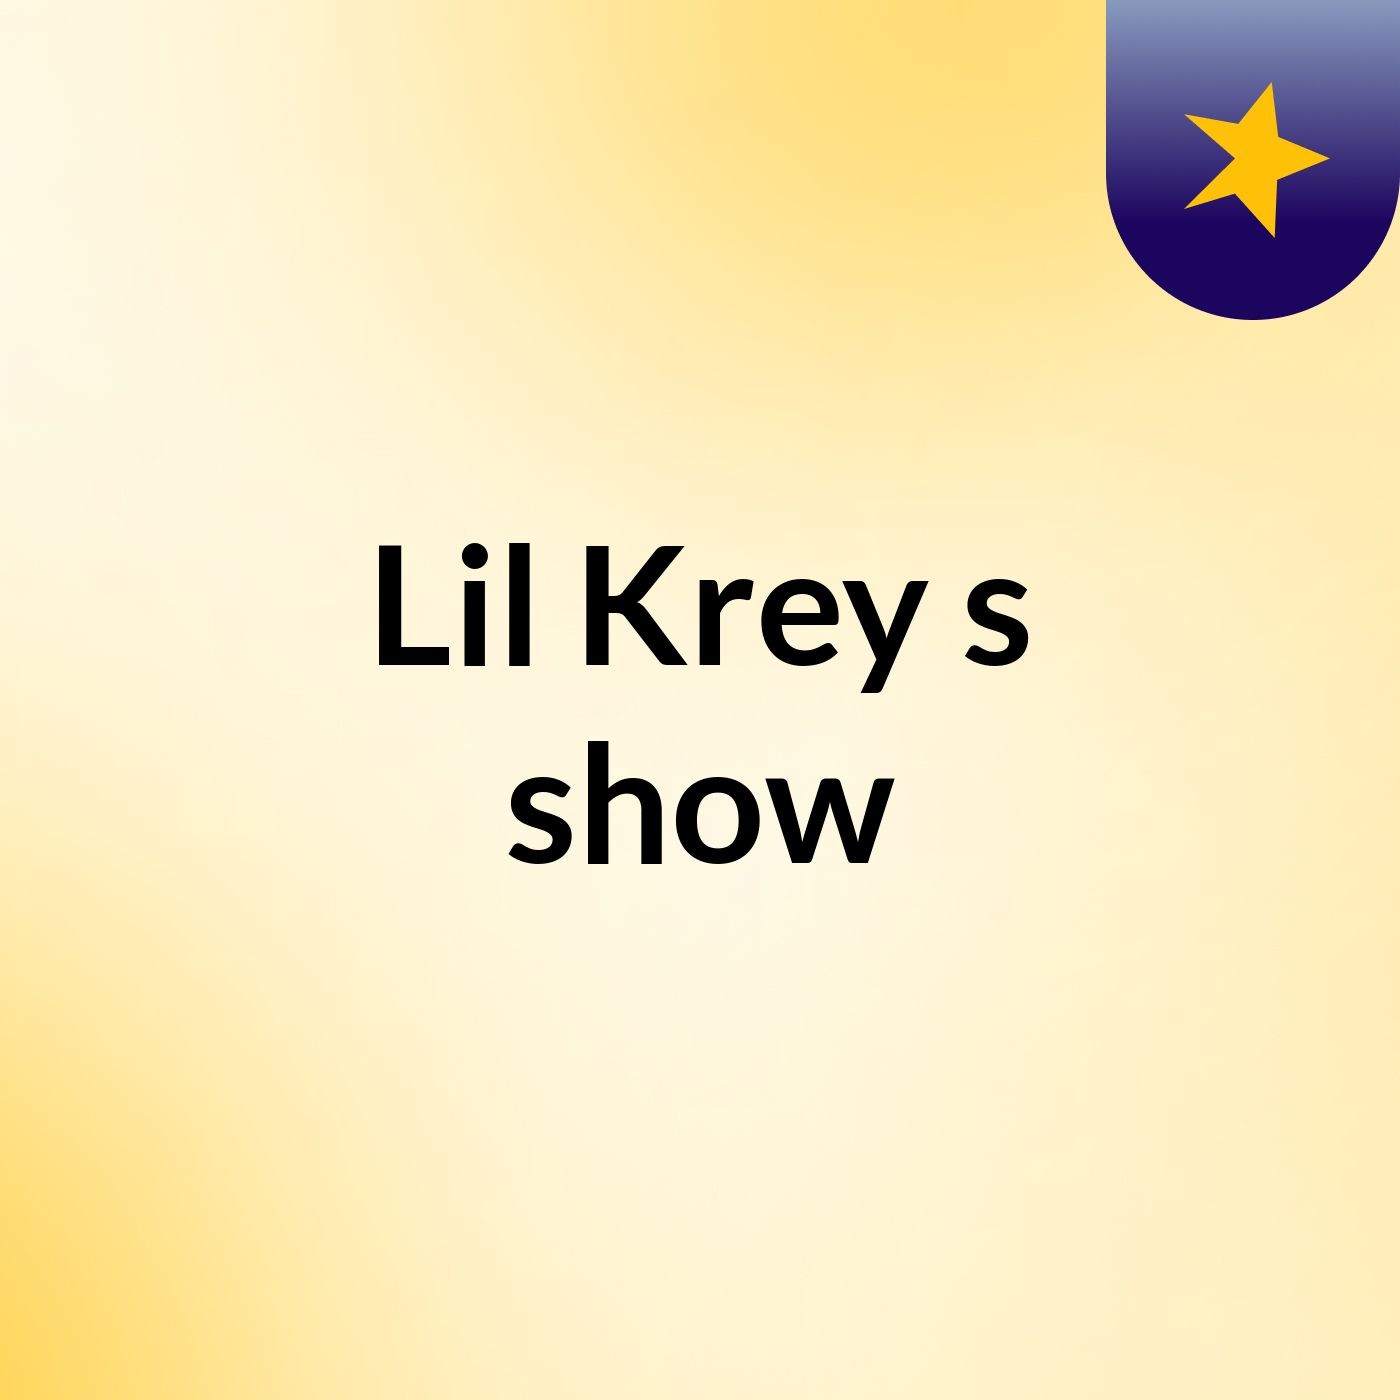 Lil Krey's show